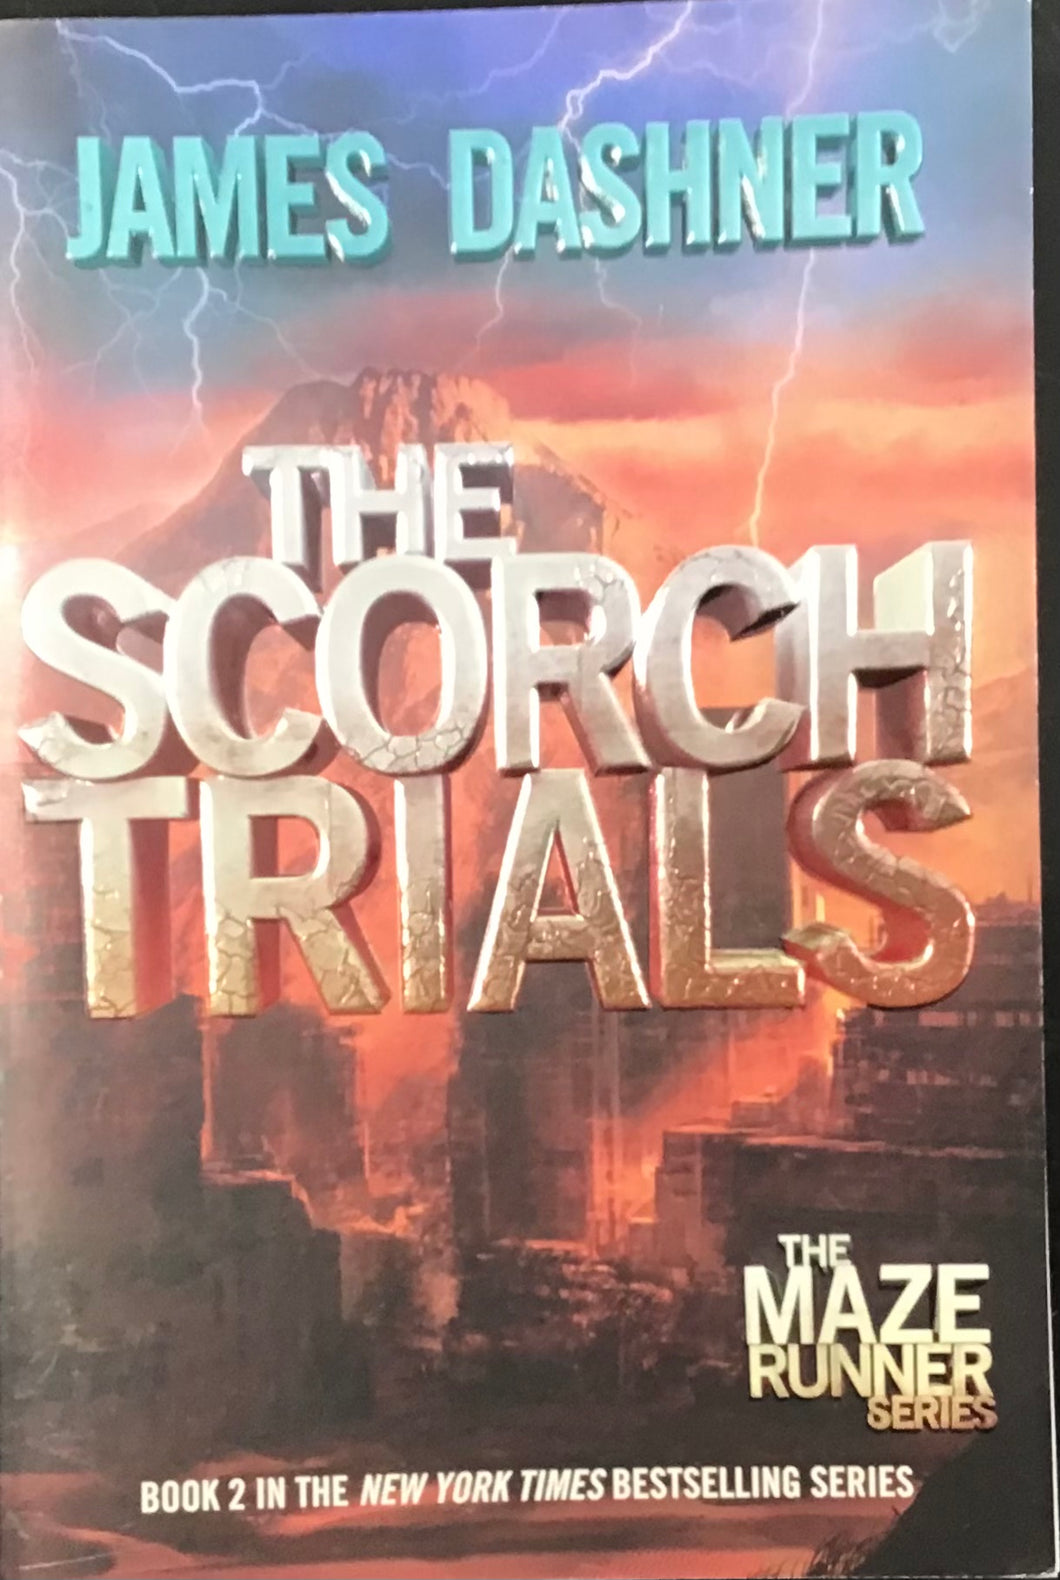 The Scorch Trials, James Dashner